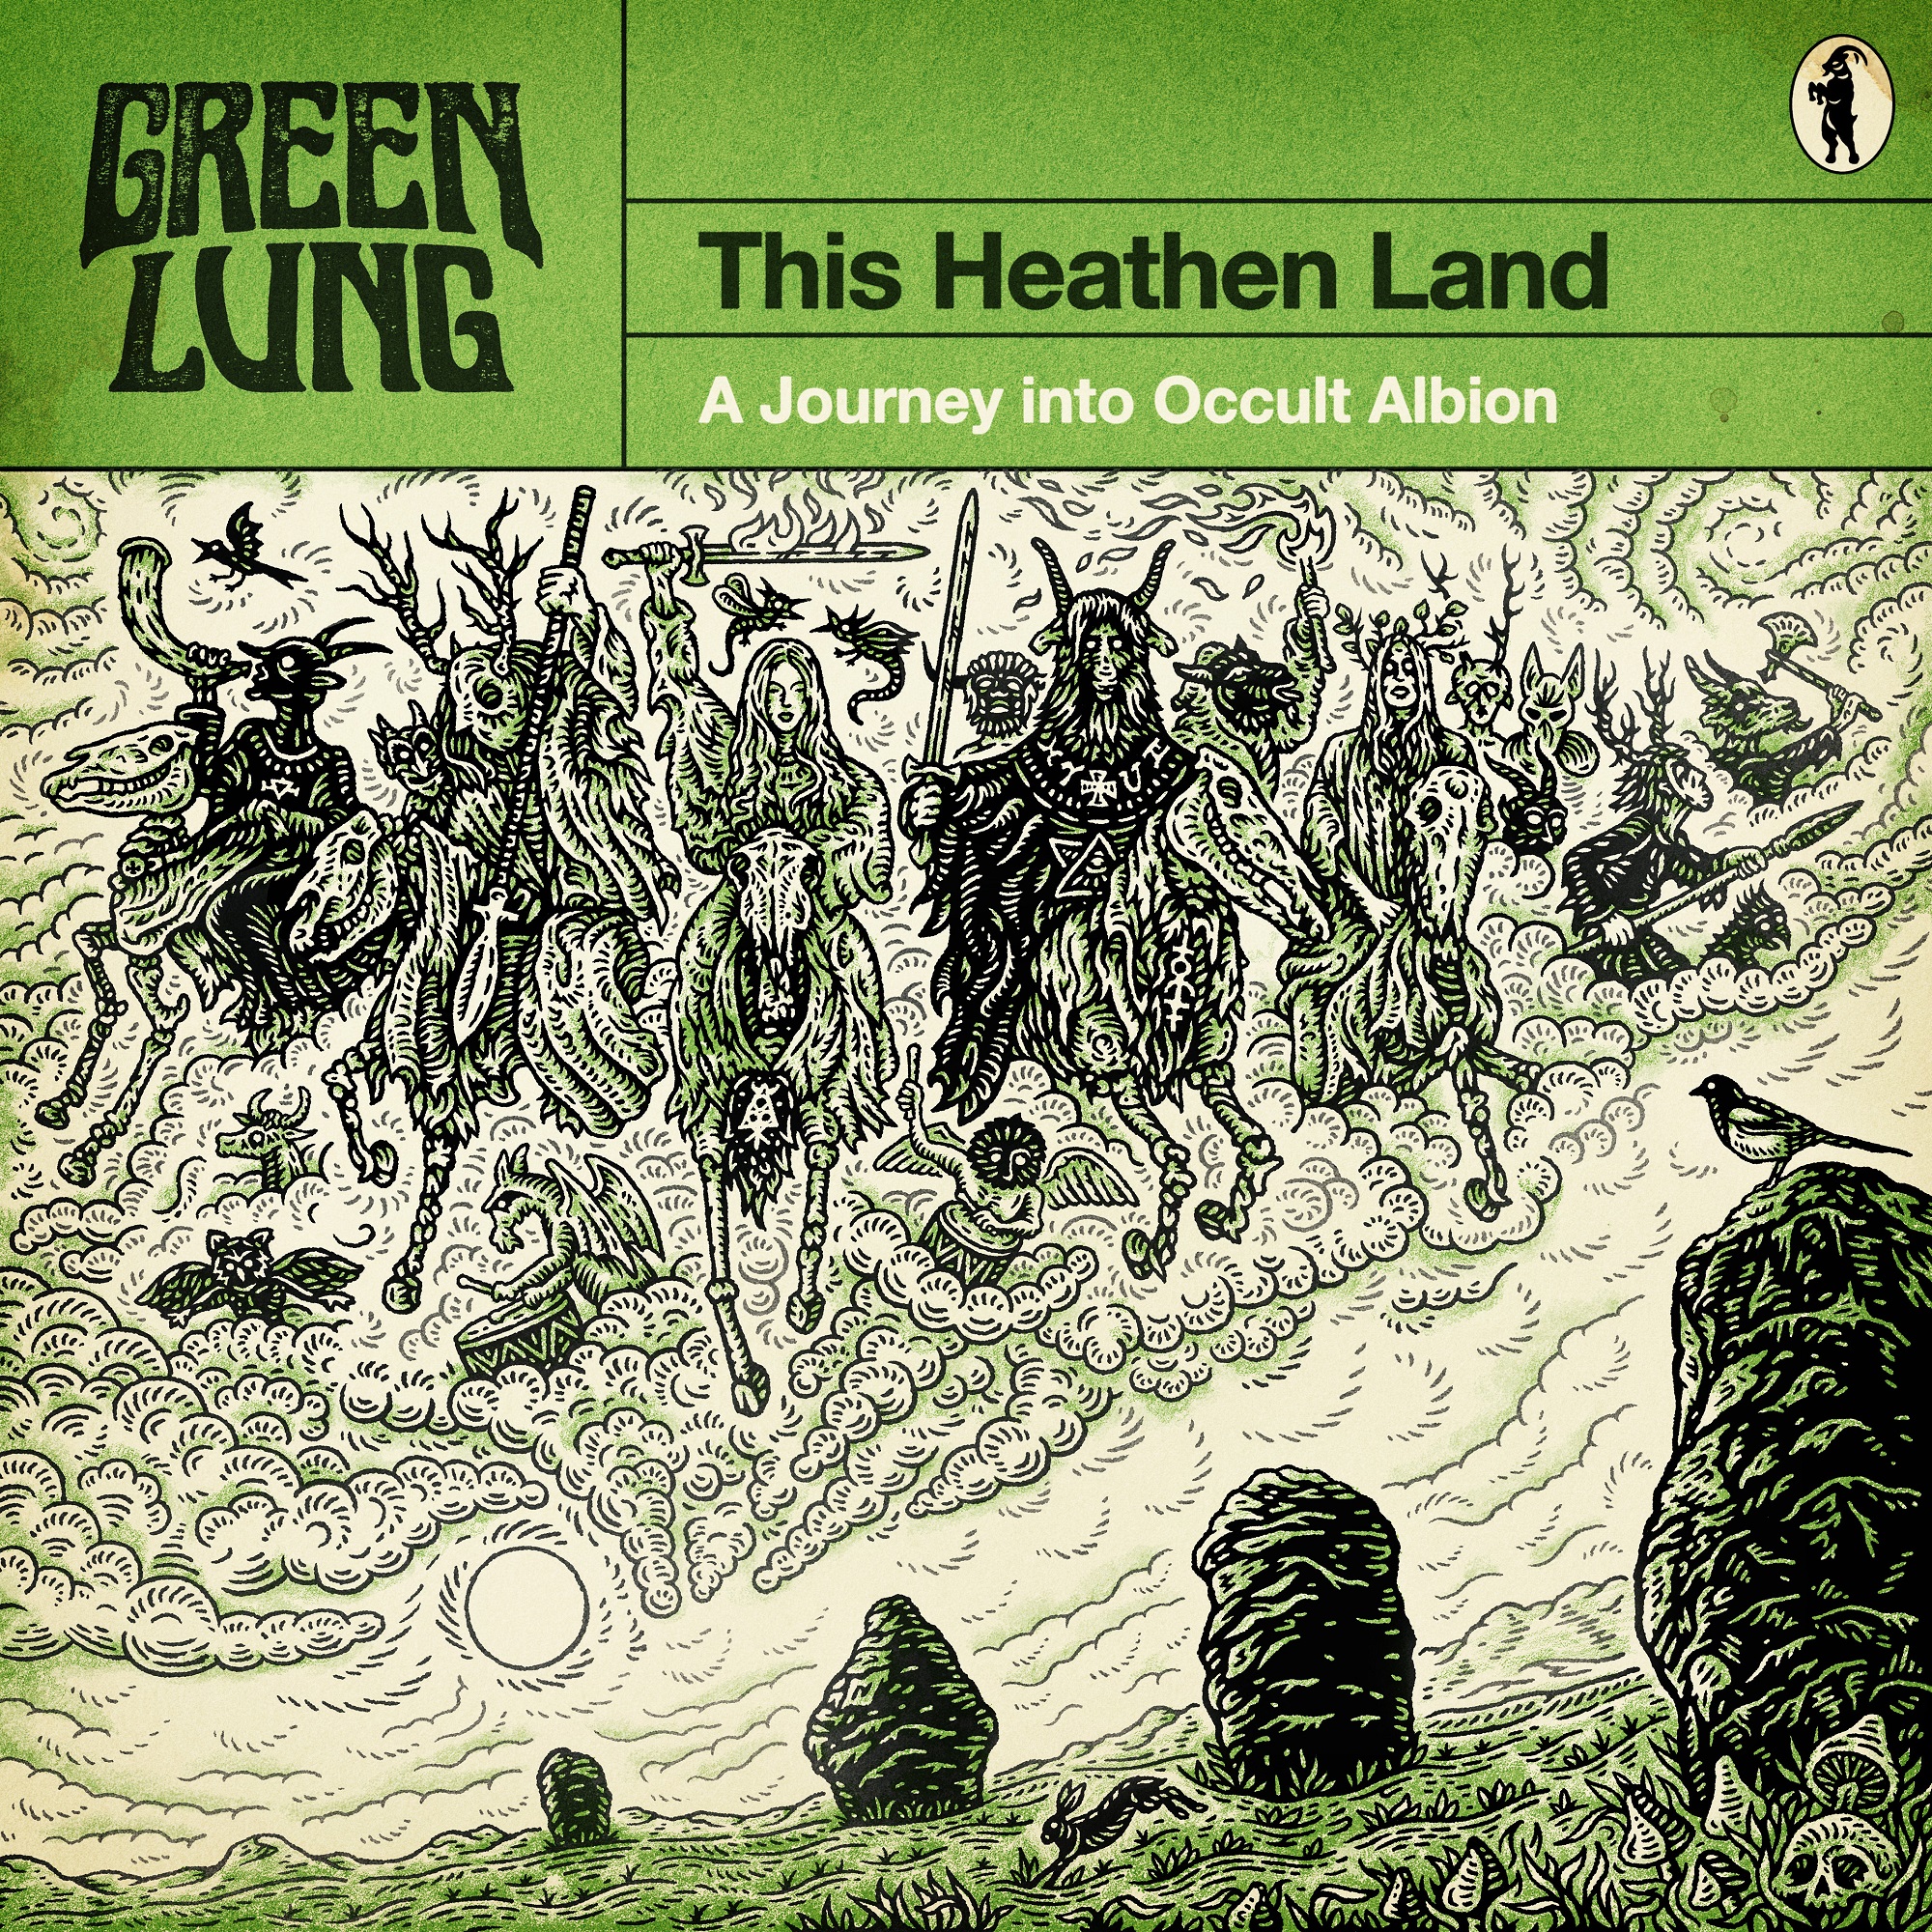 Green-Lung-This-Heathen-Land-01.jpg